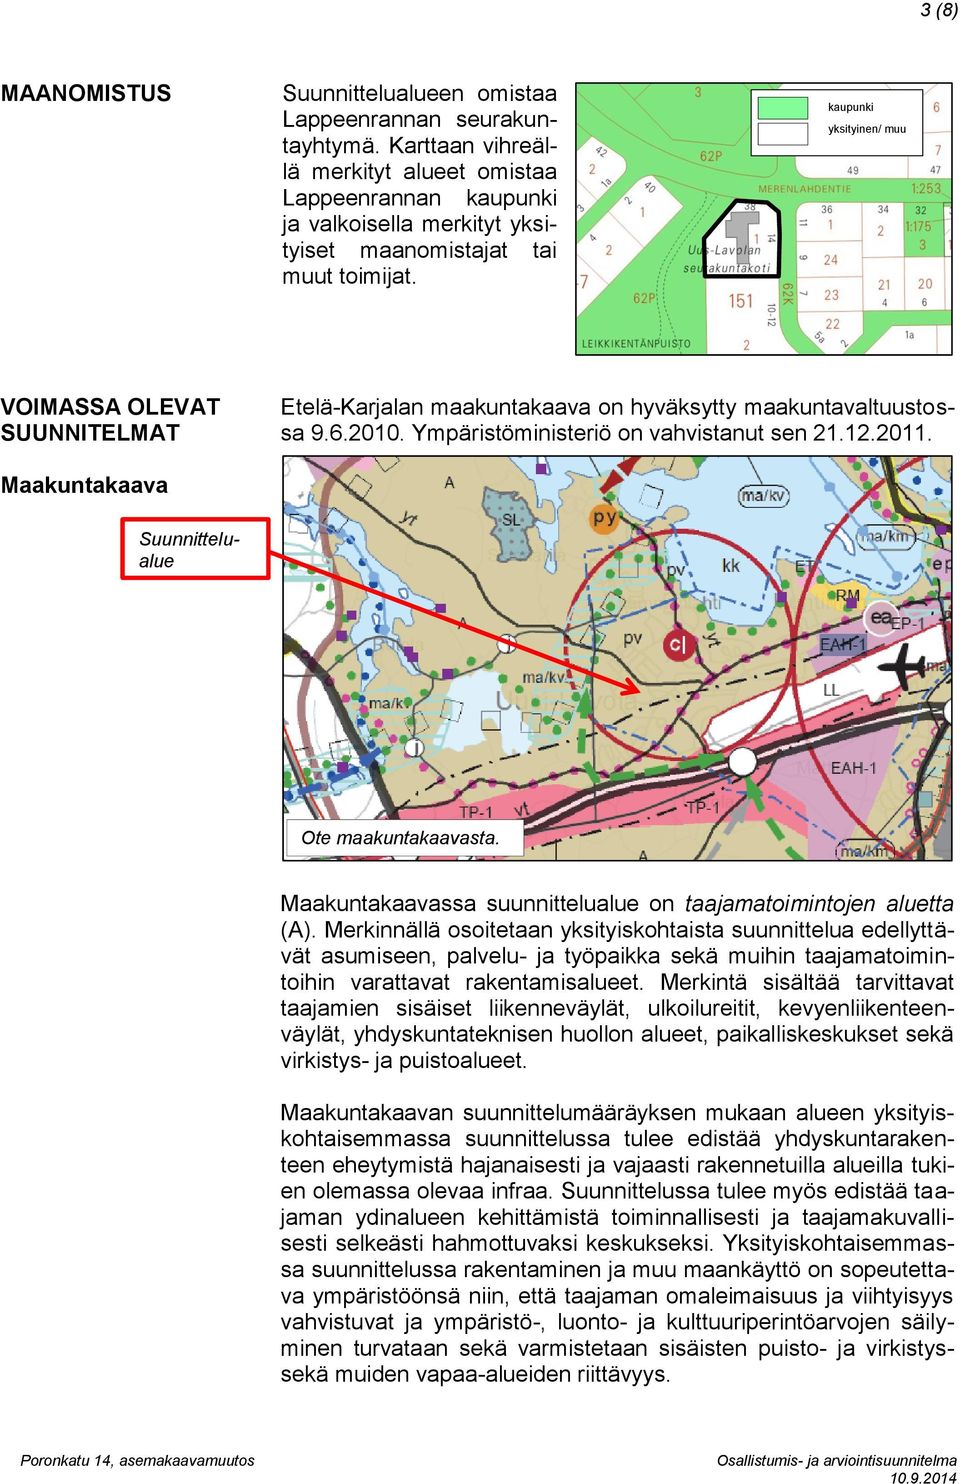 kaupunki yksityinen/ 0 muu VOIMASSA OLEVAT SUUNNITELMAT Etelä-Karjalan maakuntakaava on hyväksytty maakuntavaltuustossa 9.6.2010. Ympäristöministeriö on vahvistanut sen 21.12.2011.